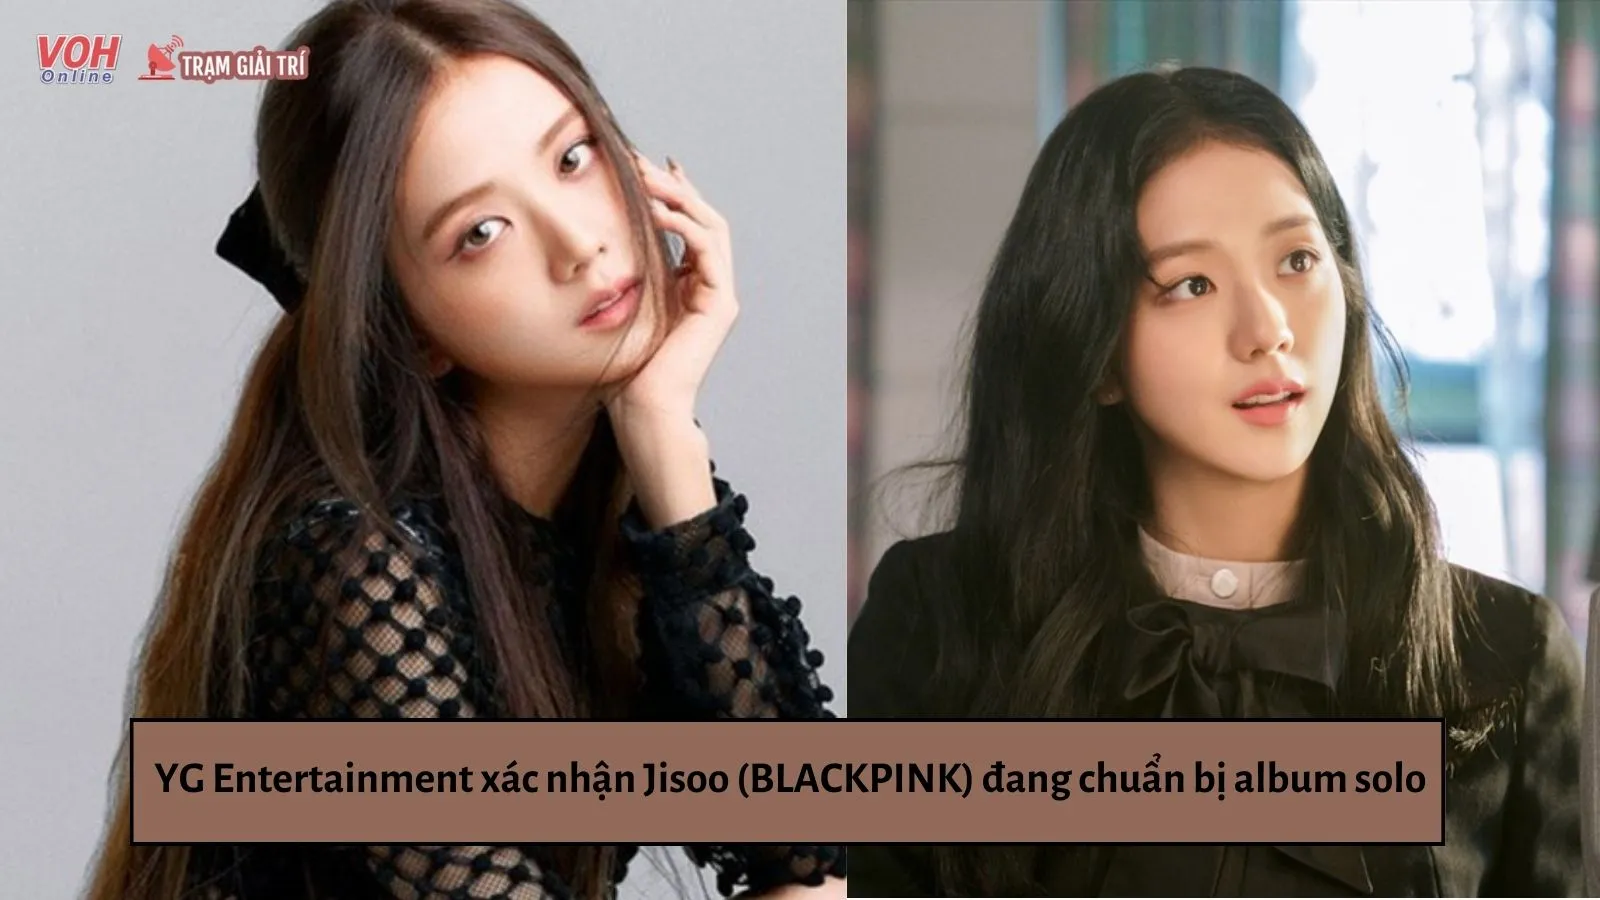 YG Entertainment xác nhận Jisoo (BLACKPINK) đang chuẩn bị album solo